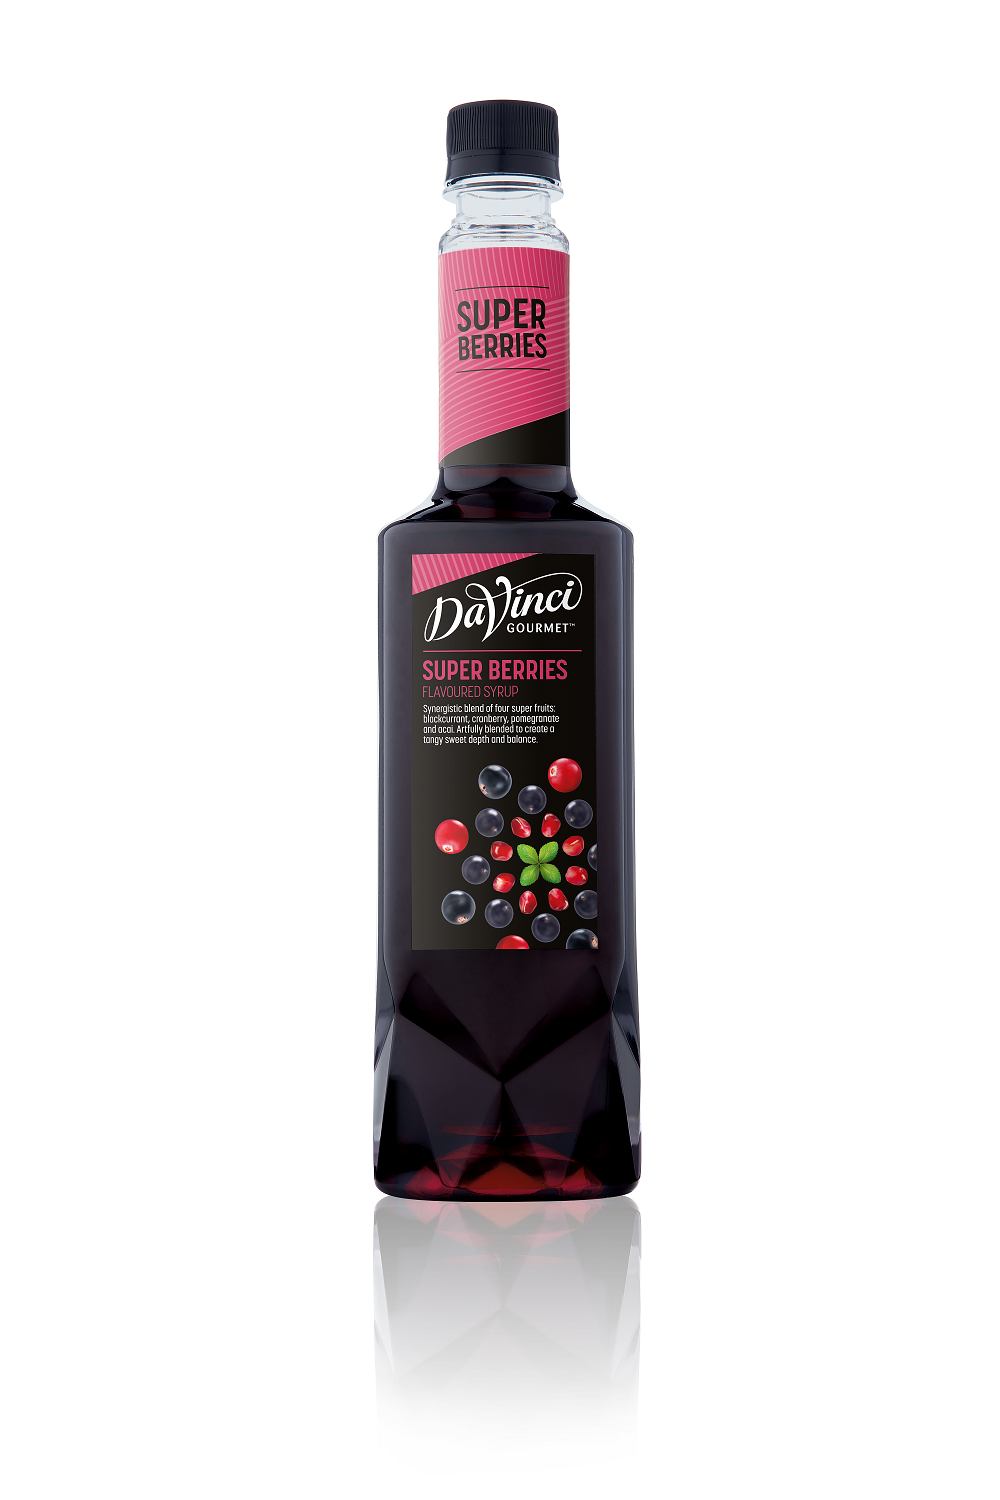 Da Vinci Gourmet Super Berries Syrup 750ml - Mixology Series